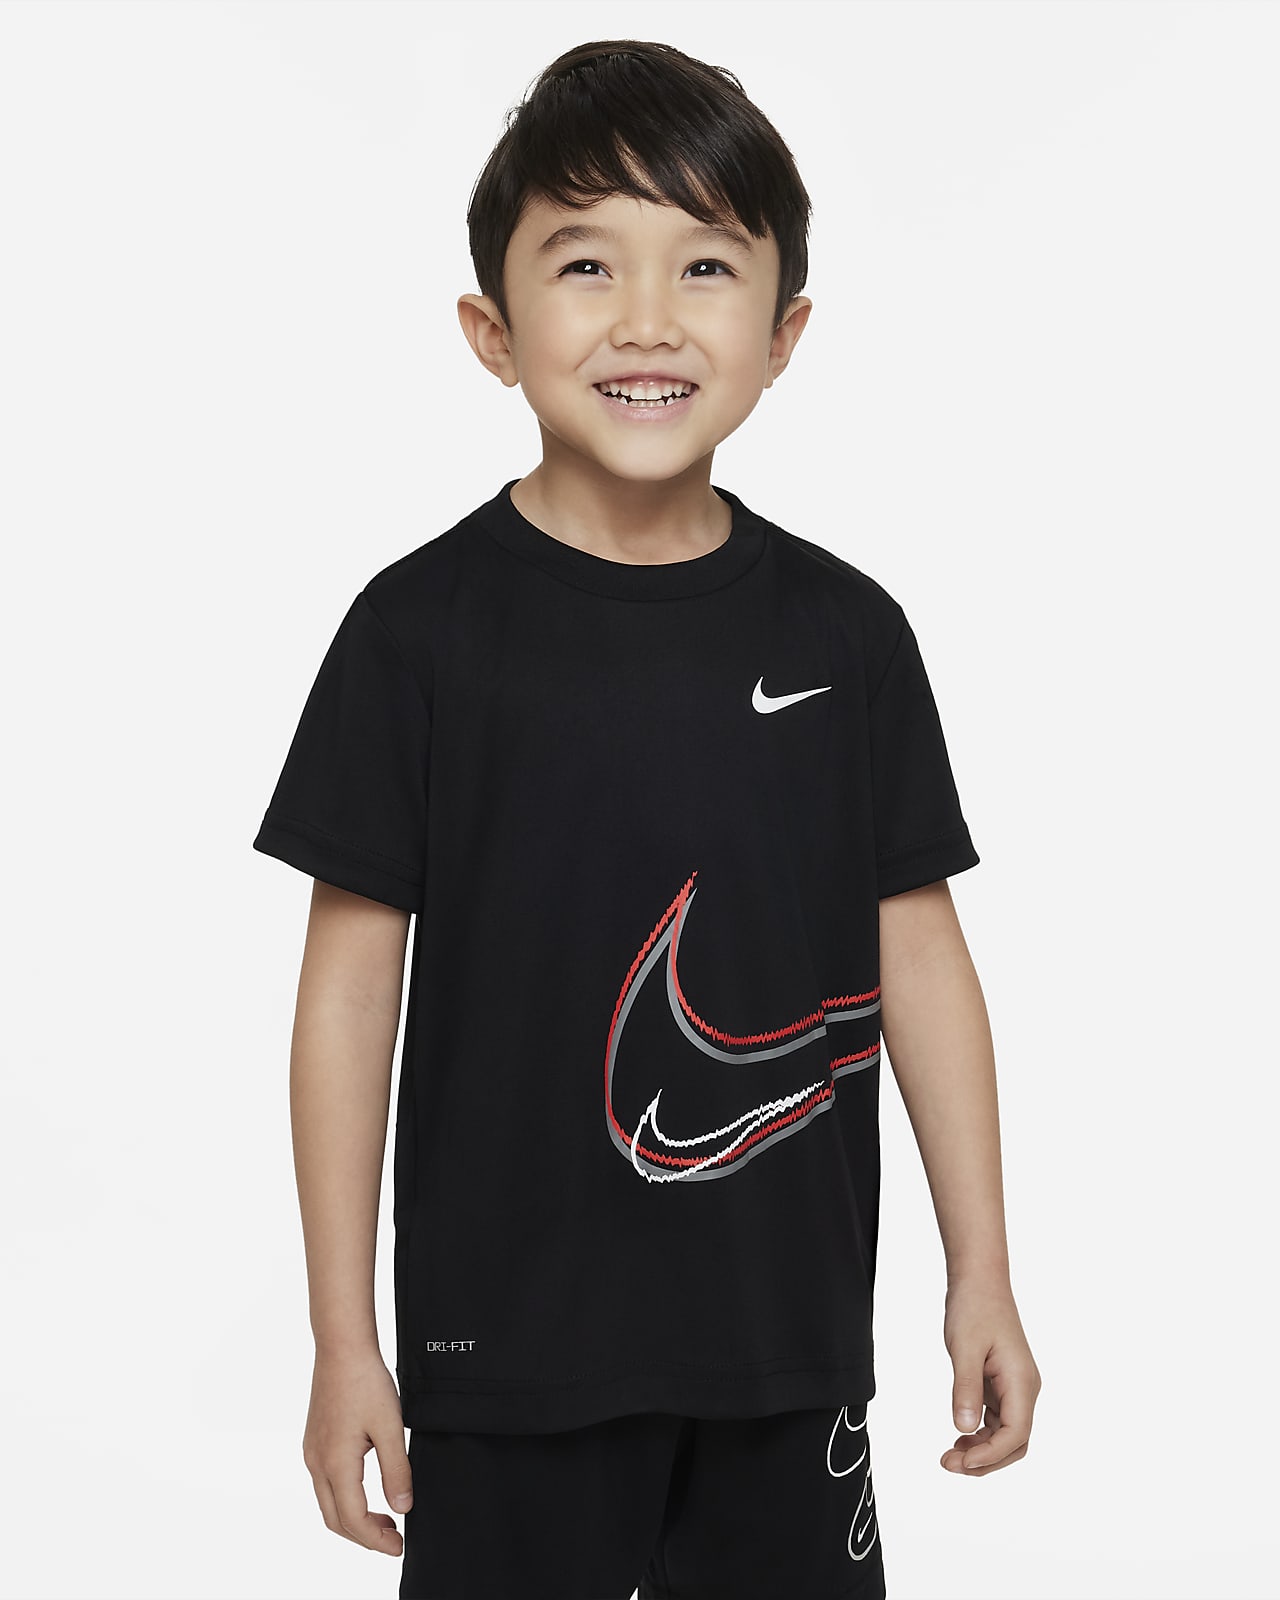 Nike Tee Toddler T-Shirt.